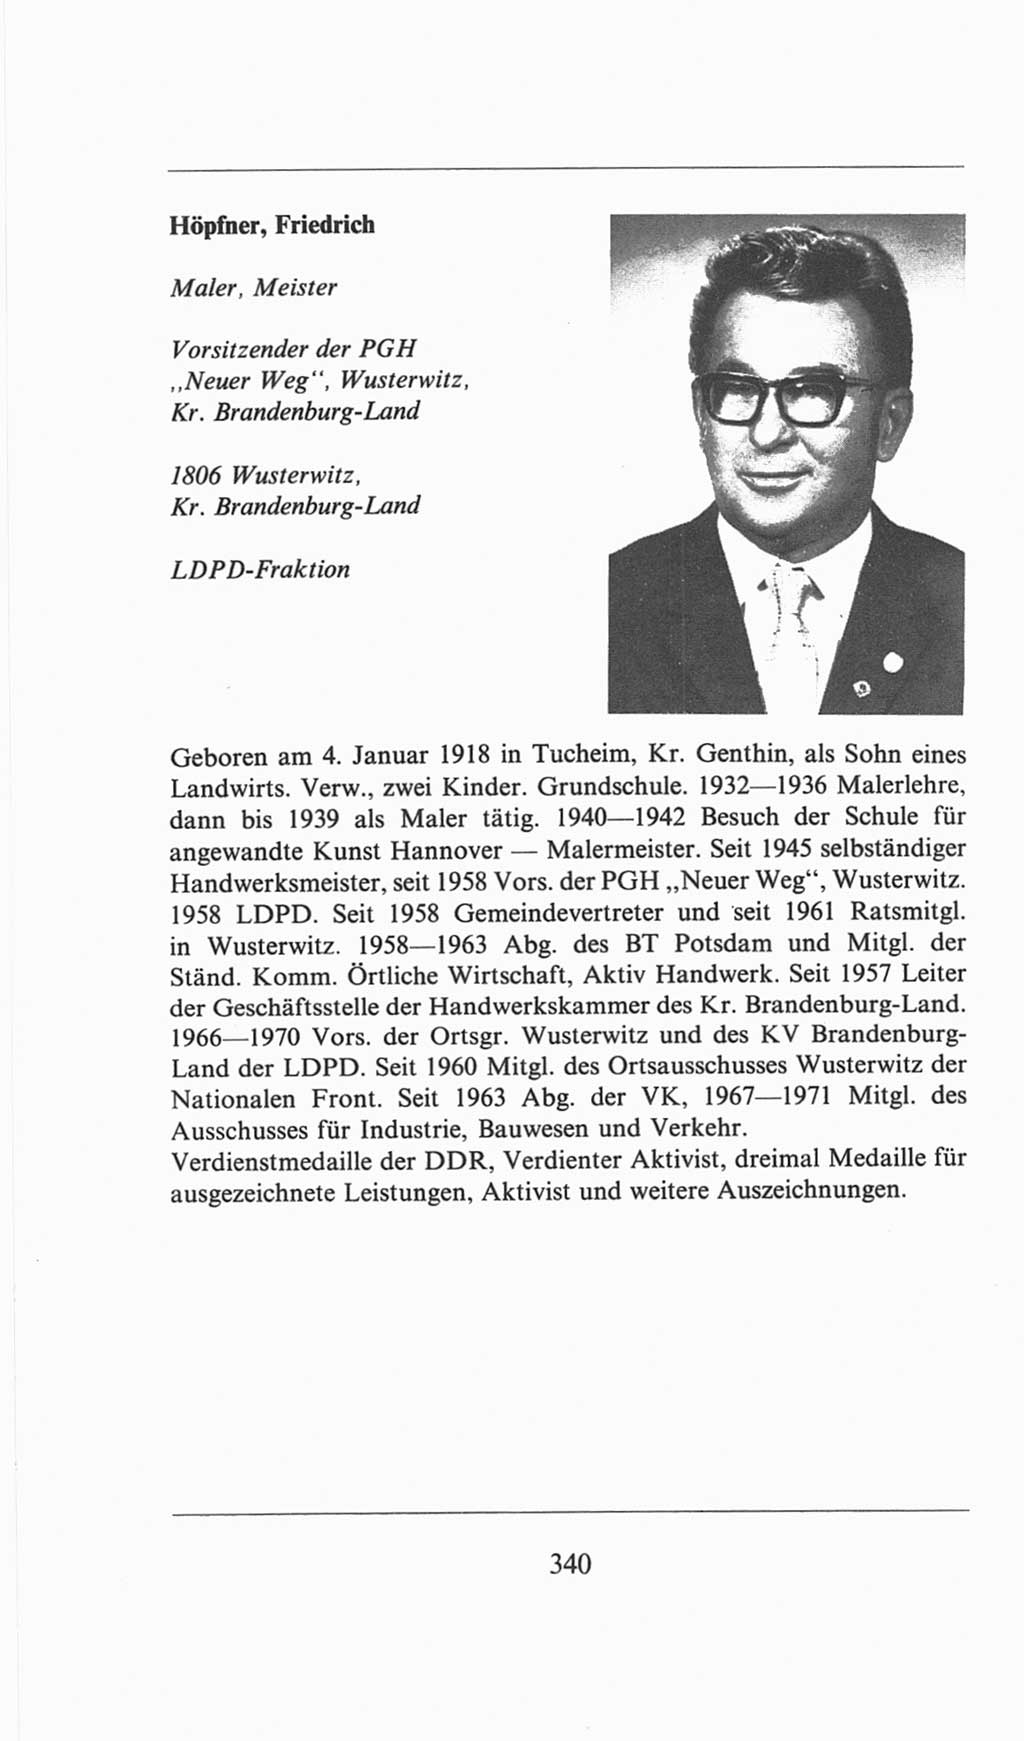 Volkskammer (VK) der Deutschen Demokratischen Republik (DDR), 6. Wahlperiode 1971-1976, Seite 340 (VK. DDR 6. WP. 1971-1976, S. 340)